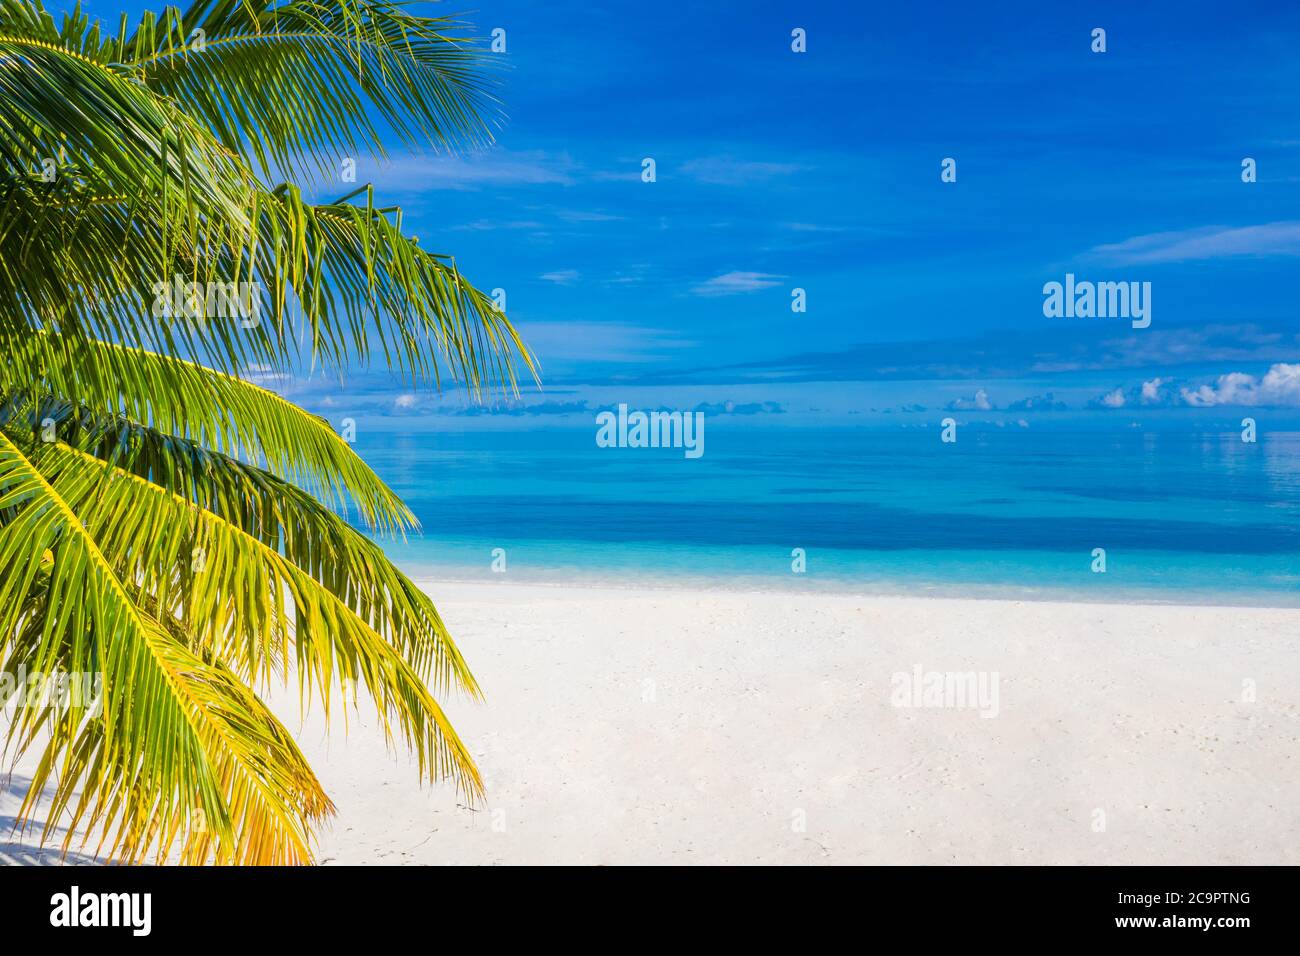 Wunderschöner Palmenstrand, Meereslandschaft. Sommer Urlaub und Urlaub Konzept Hintergrund. Inspirierendes tropisches Landschaftsdesign. Tourismus und Reisedesign Stockfoto